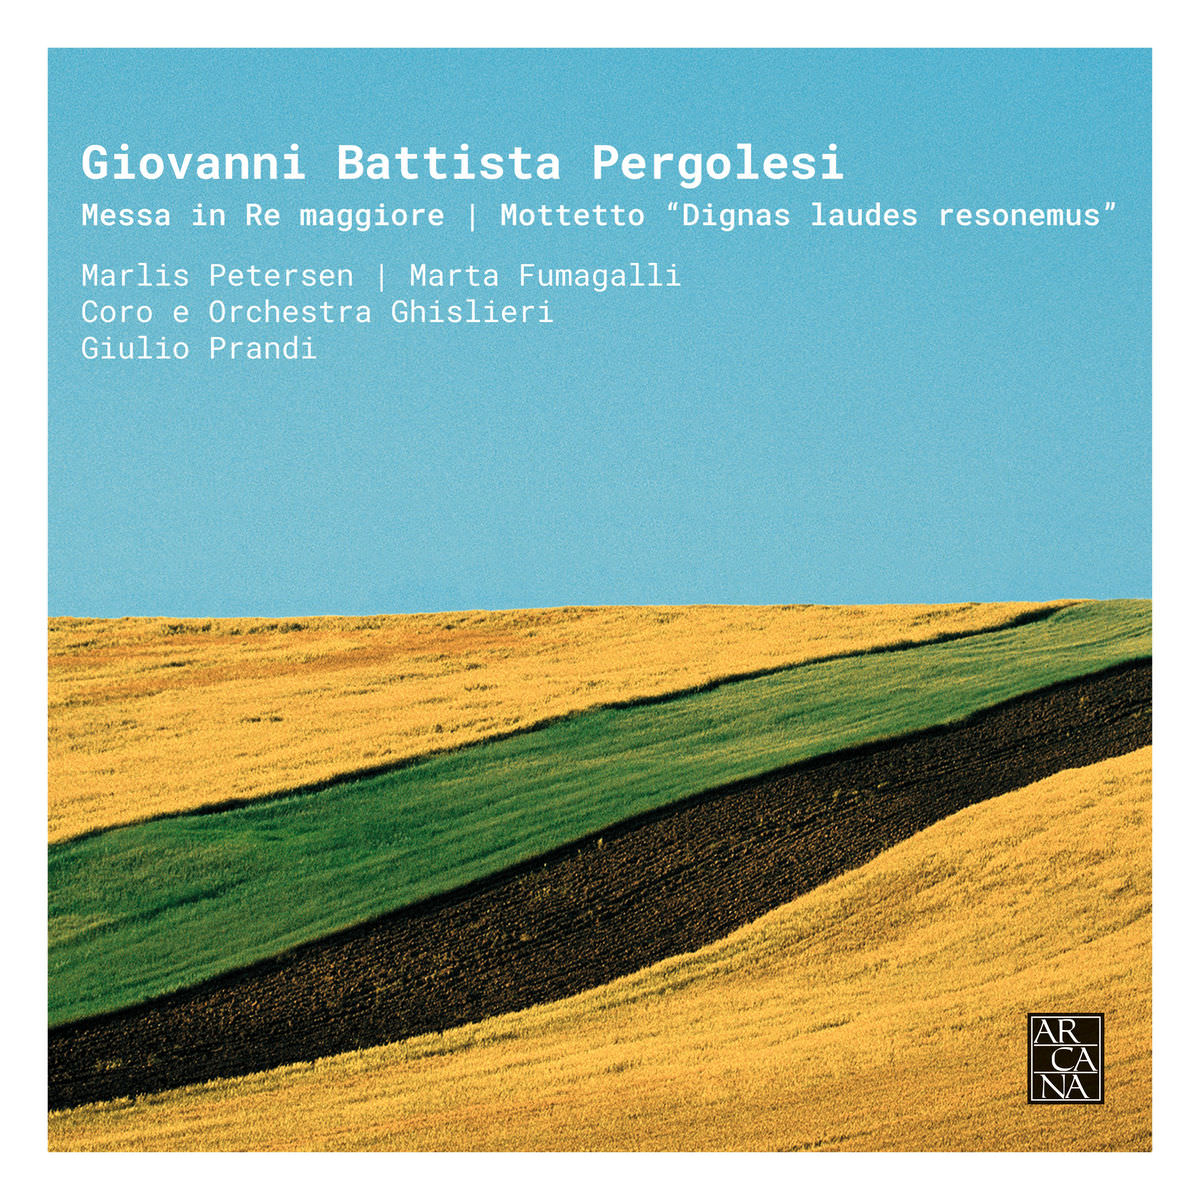 Ghislieri Consort, Ghislieri Choir - Pergolesi: Messa in Re Maggiore & Mottetto "Dignas laudes resonemus" (2018) [FLAC 24bit/88,2kHz]